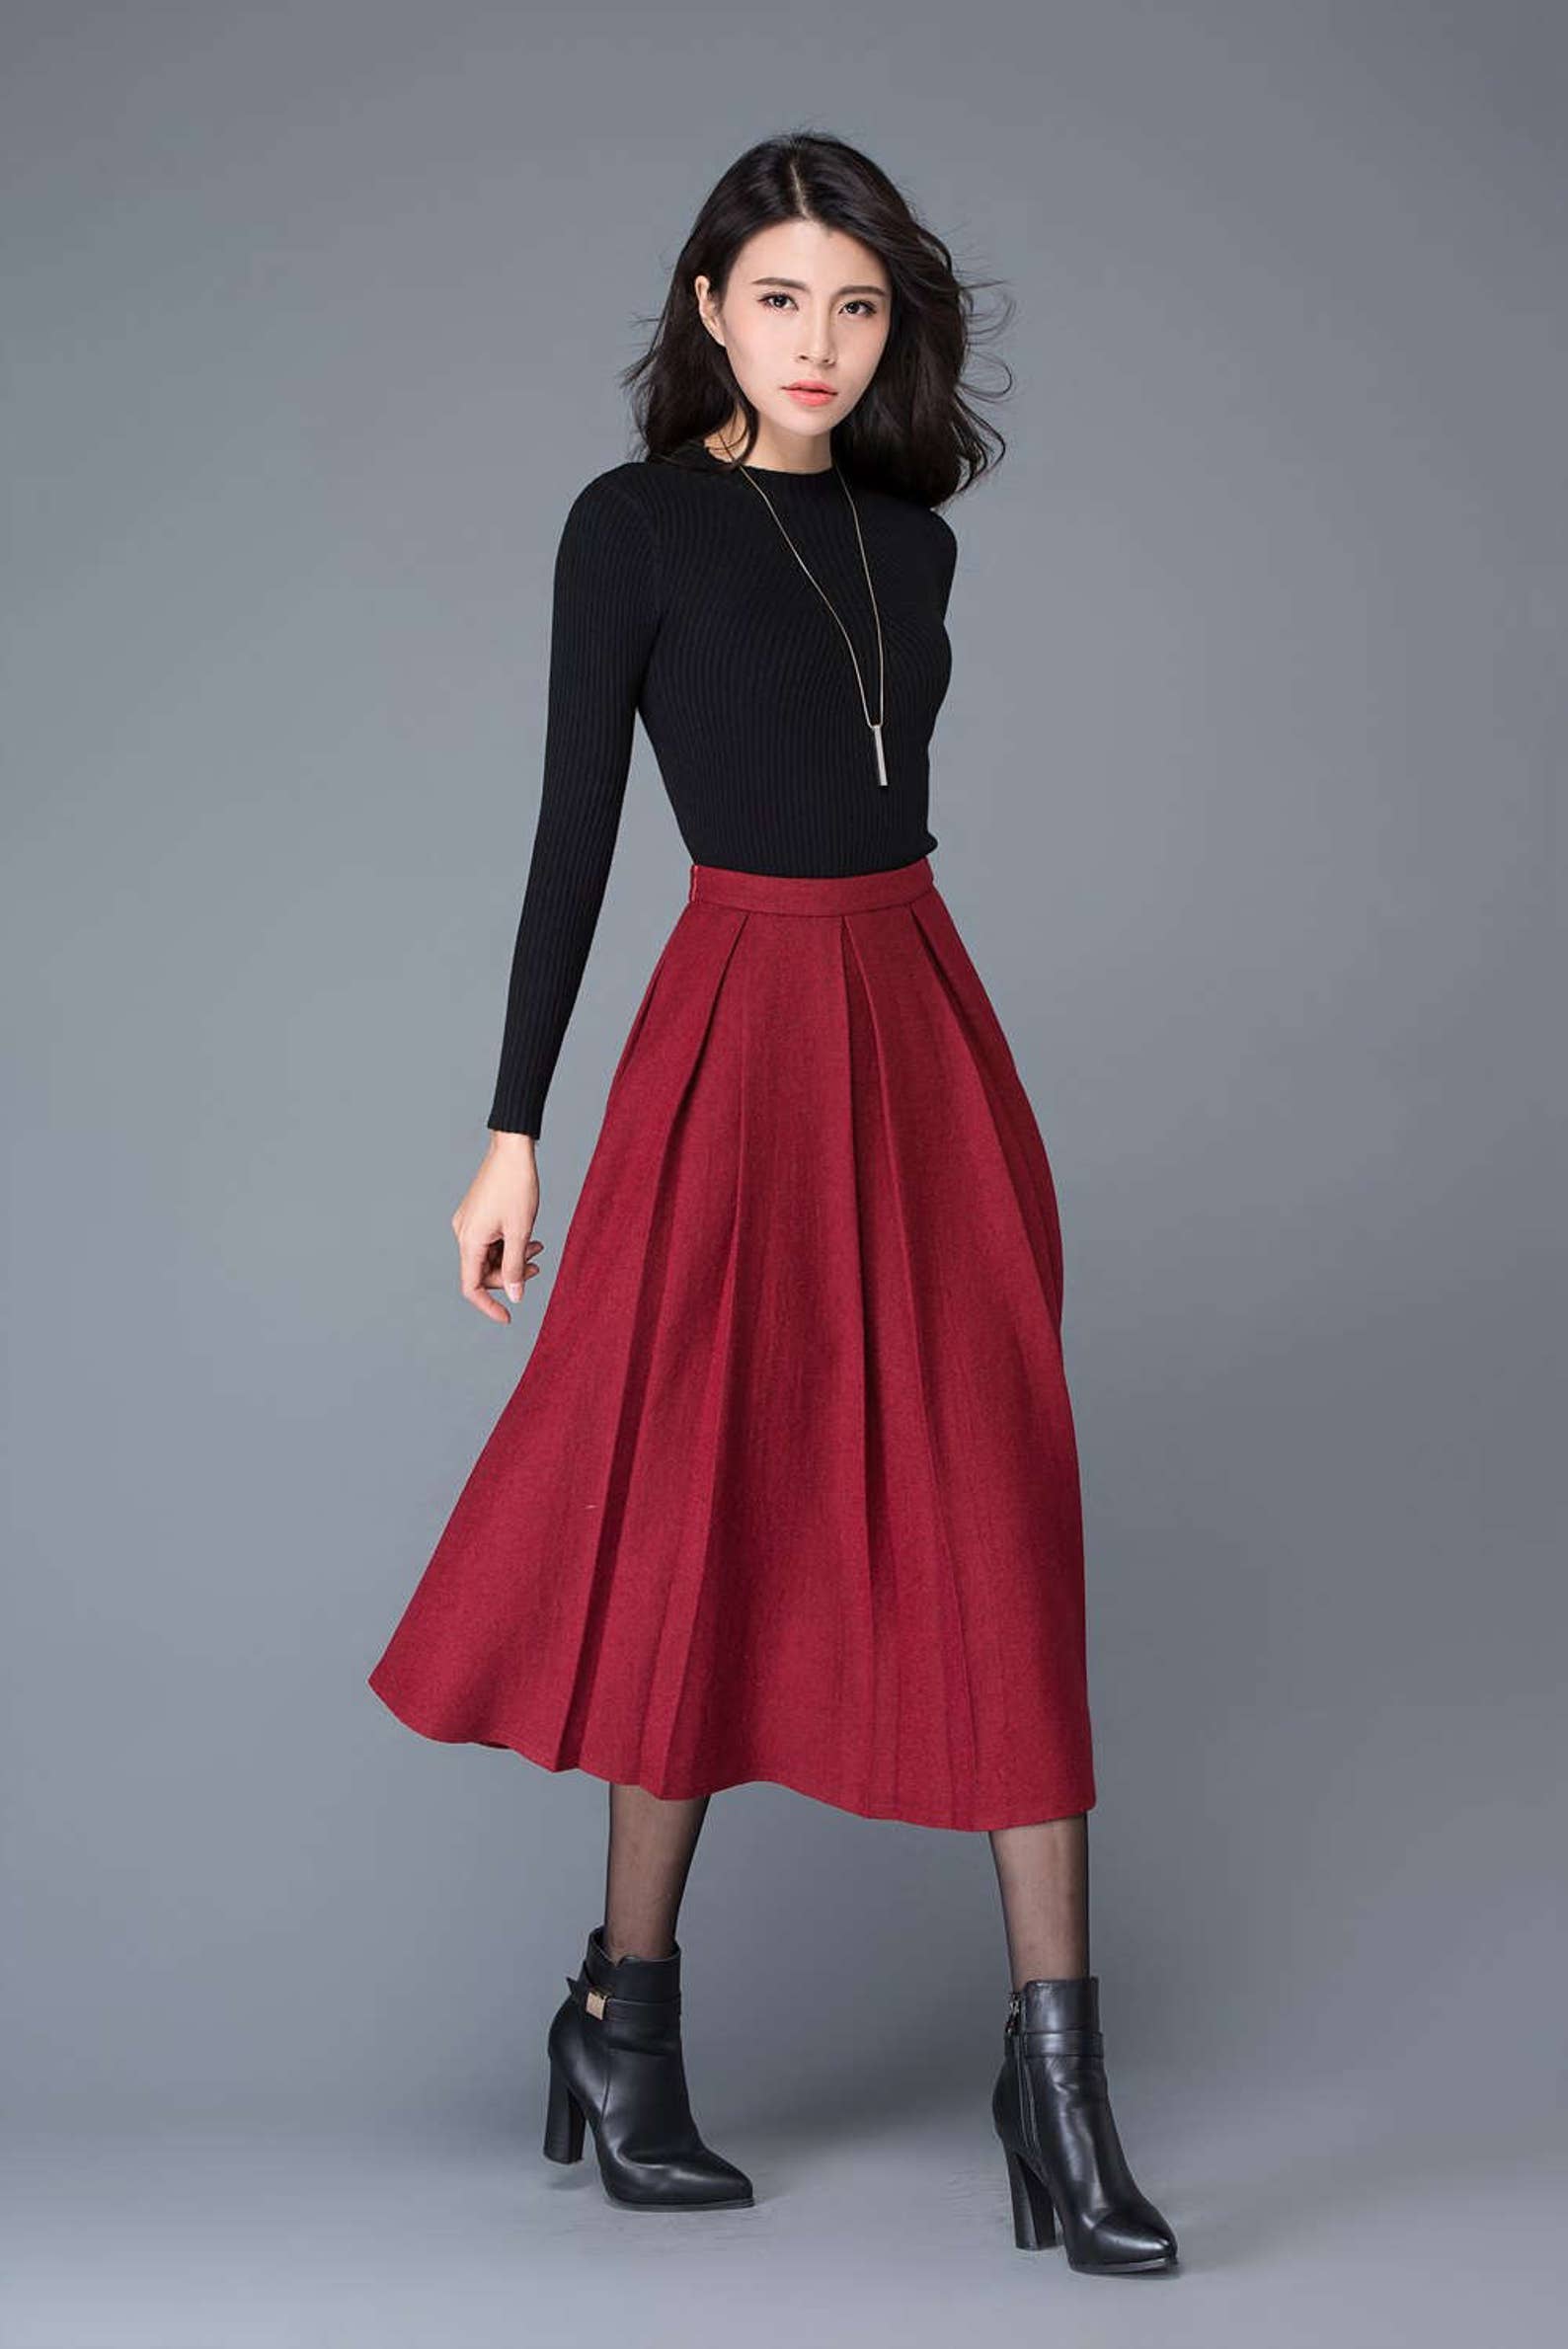 Red wool skirt midi skirt wool skirt women skirts winter | Etsy